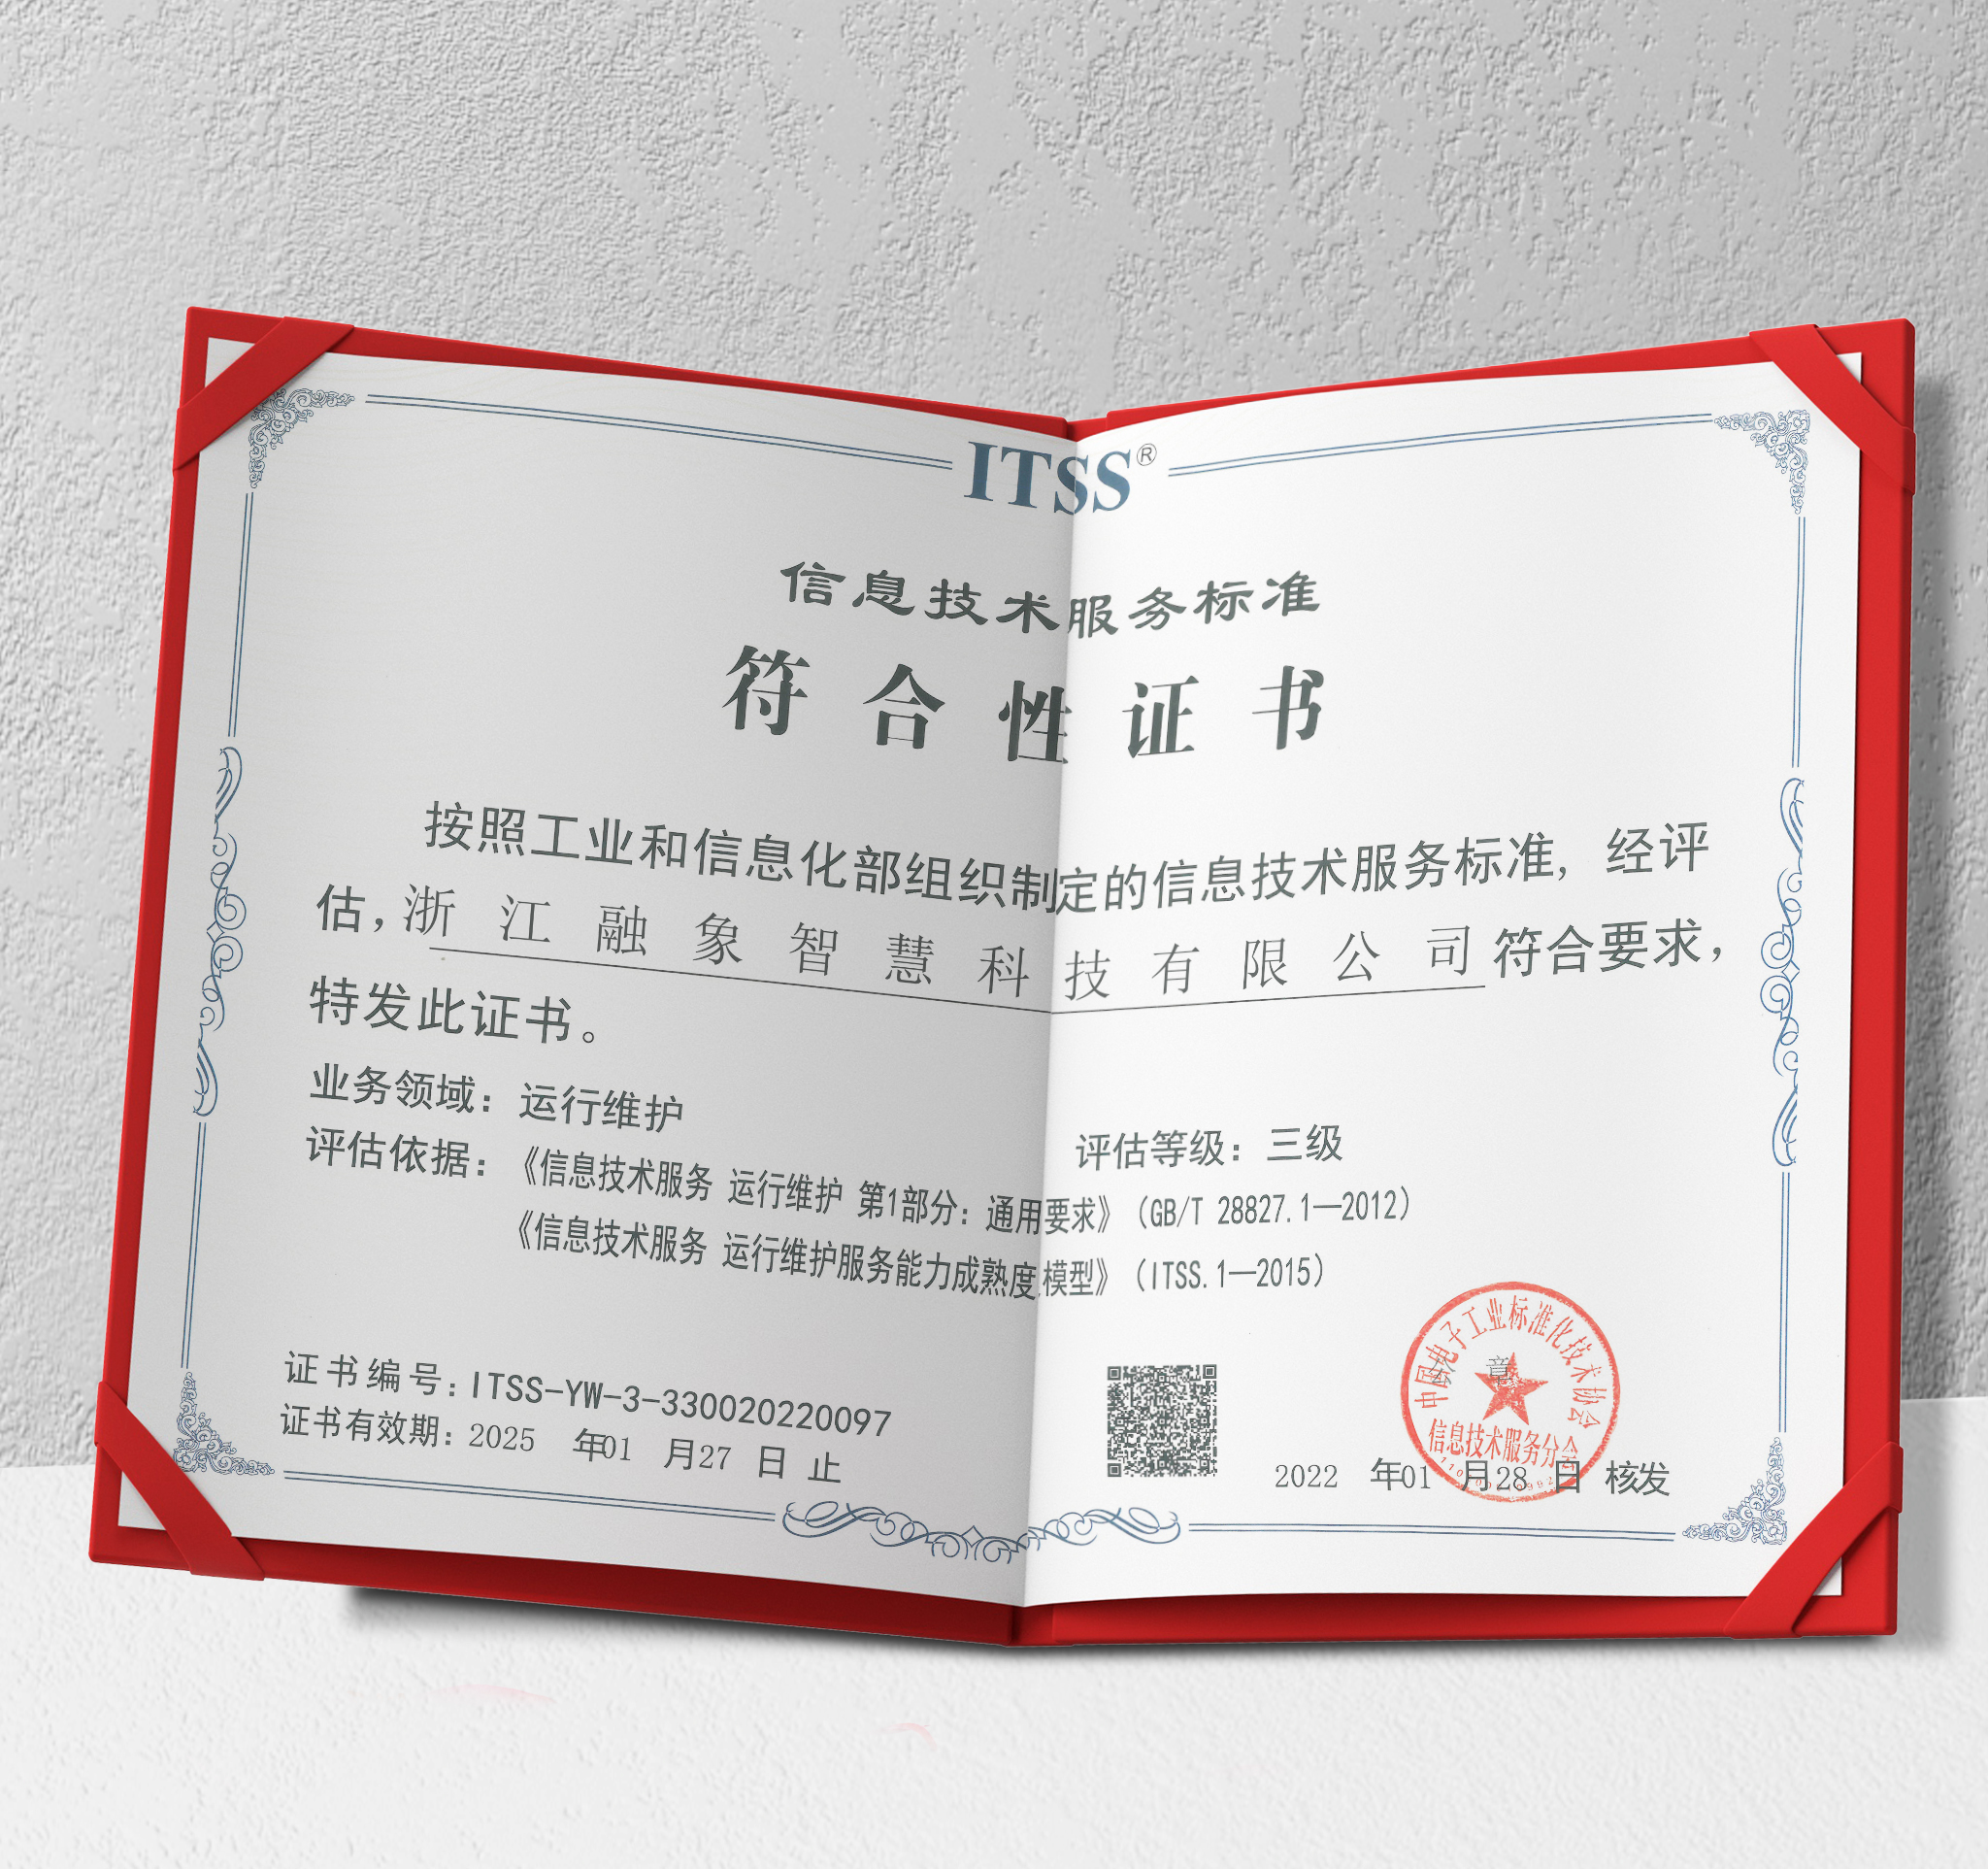 融象智慧通过中国电子工业标准化技术协会itss三级认证